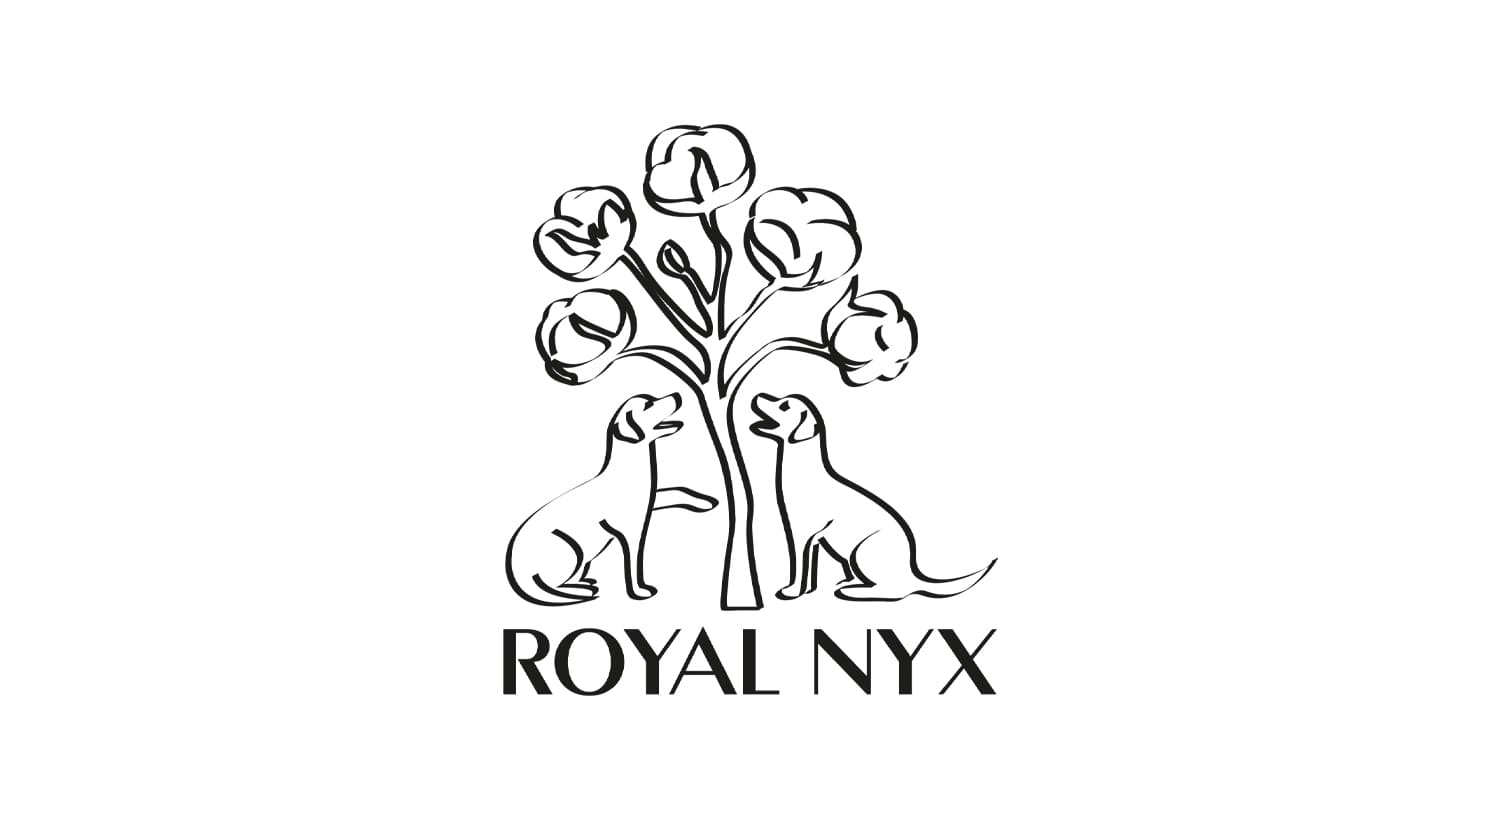 ROYAL NYX